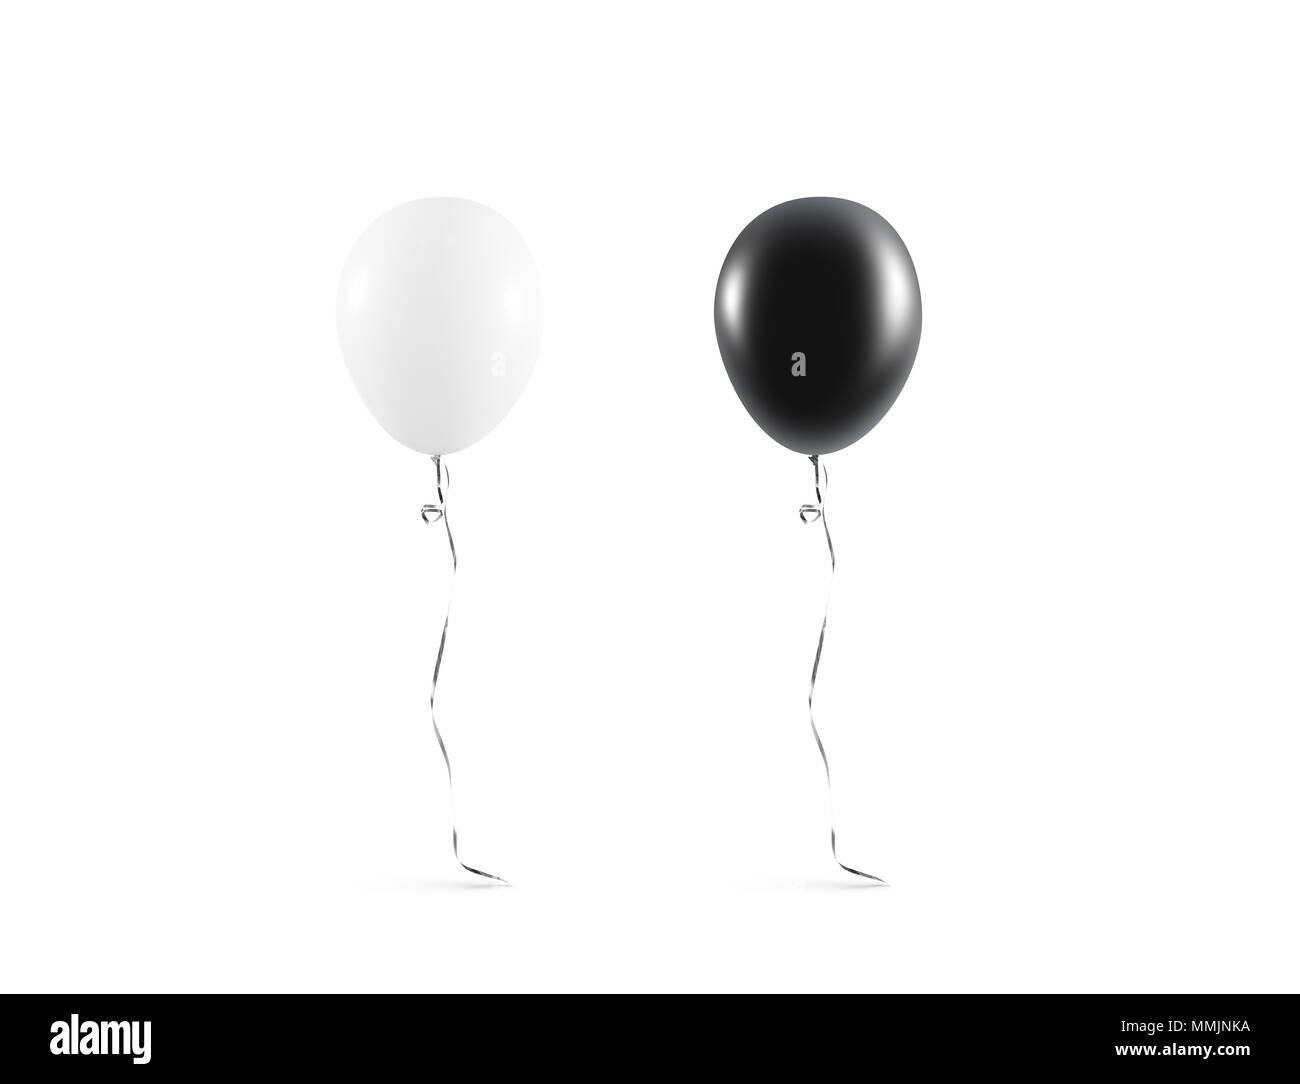 Leere schwarze und weiße Ballon mock up isoliert. Klar Weiß balloon art design mockup. Sauber rein baloon Vorlage. Logo, Textur, Muster Präsentation auf normales aerostat Design Element. Stockfoto